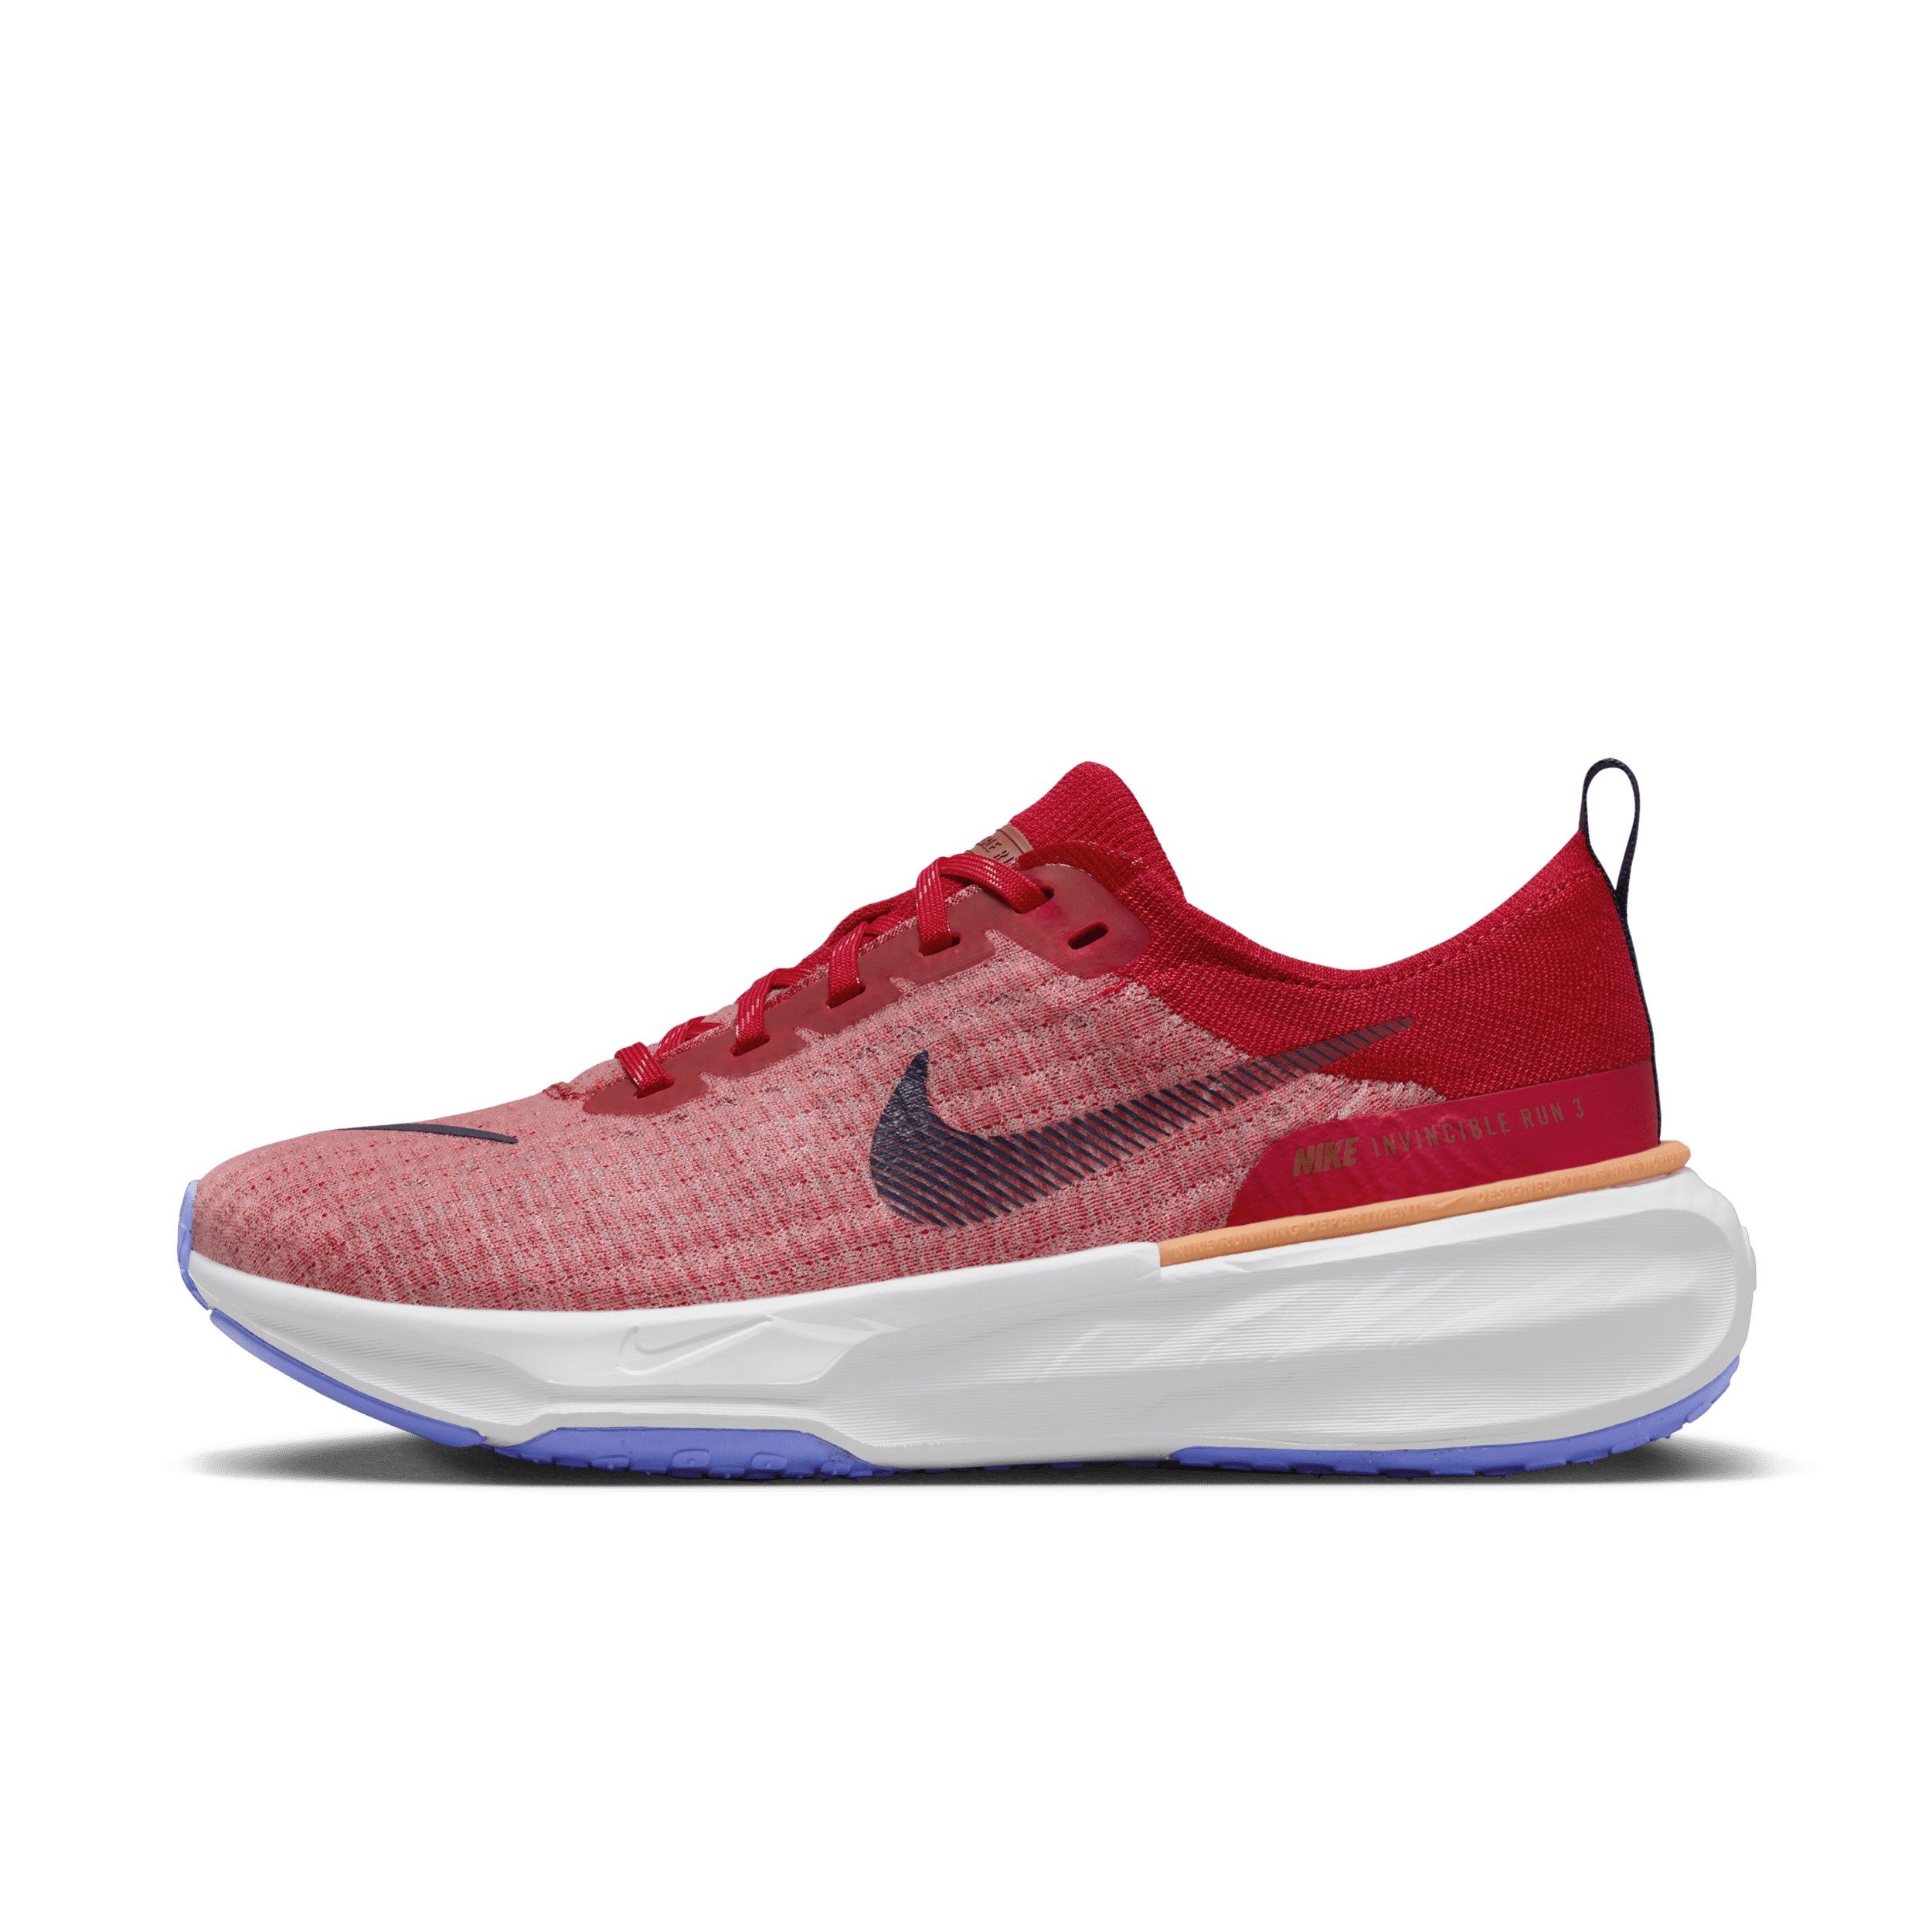 Nike Invincible 3 hardloopschoenen voor heren (straat) - Rood